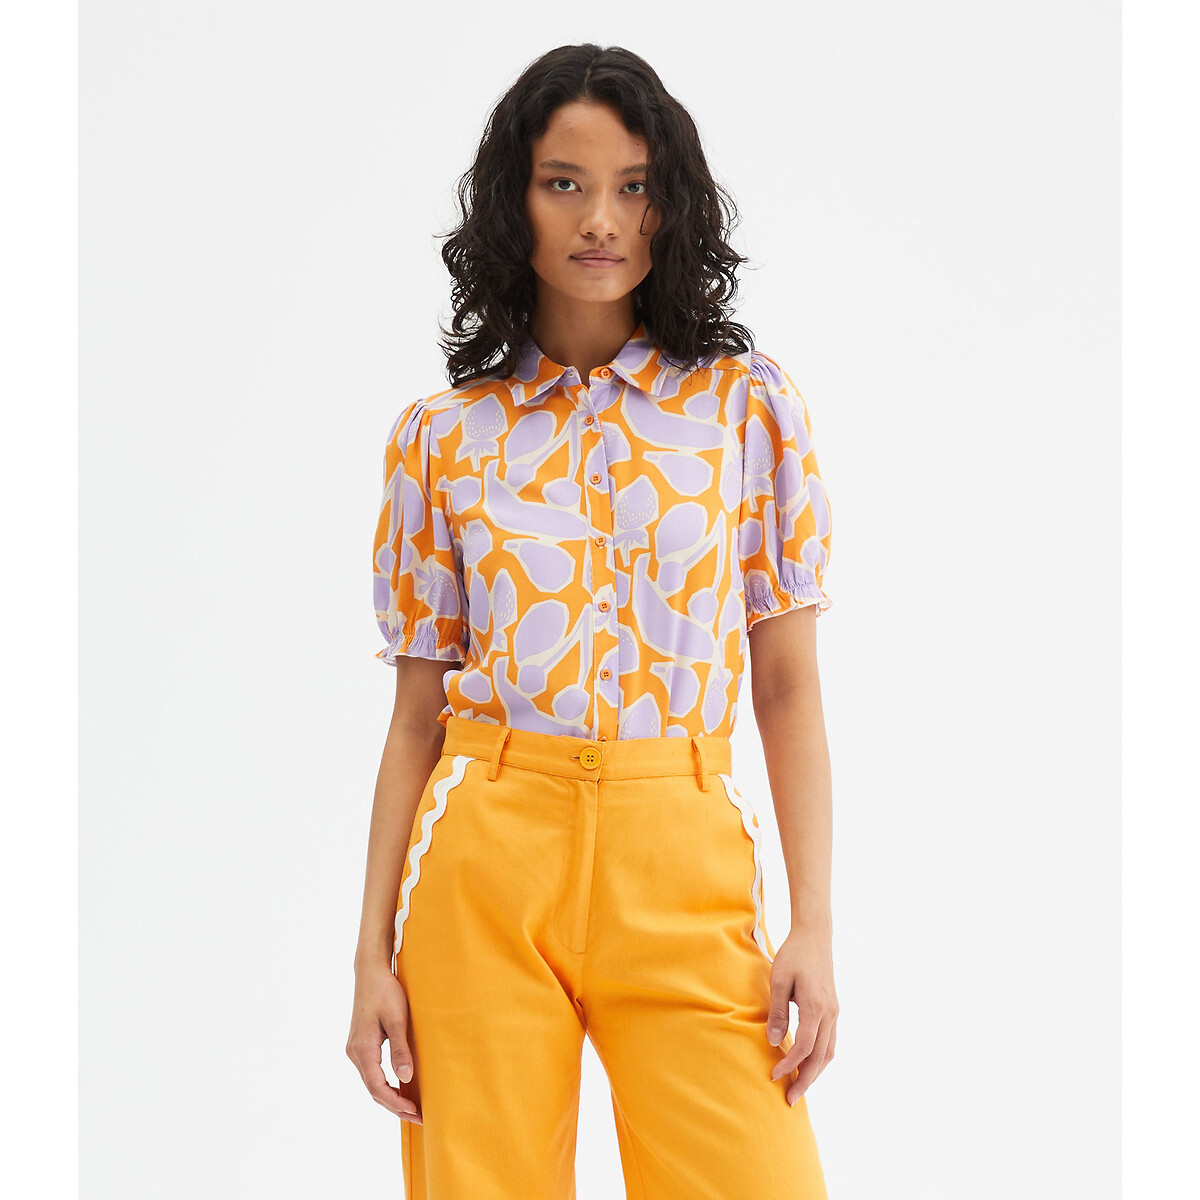 Блузка с принтом и короткими рукавами с напуском XL оранжевый блузка с принтом и короткими рукавами xl розовый